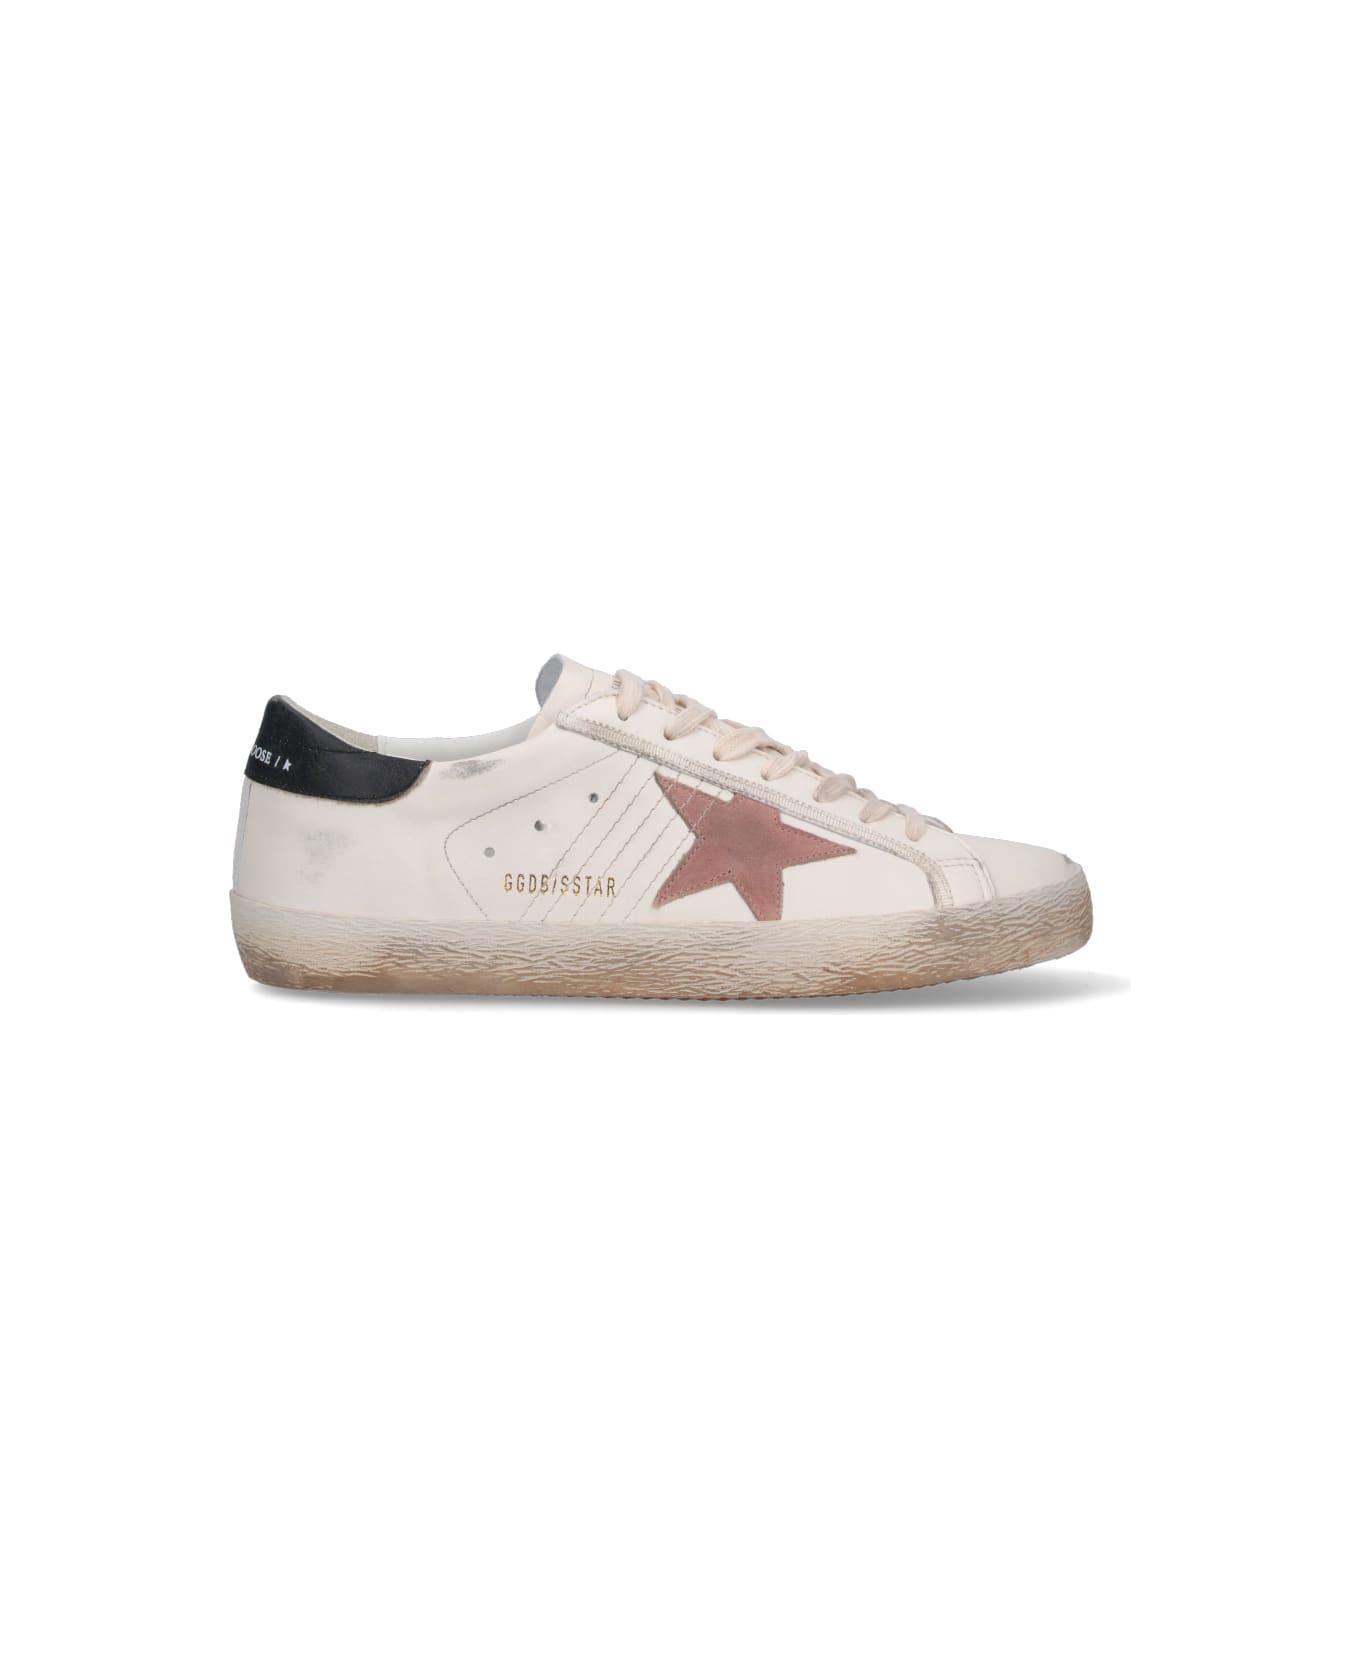 Golden Goose Superstar Sneakers - White スニーカー